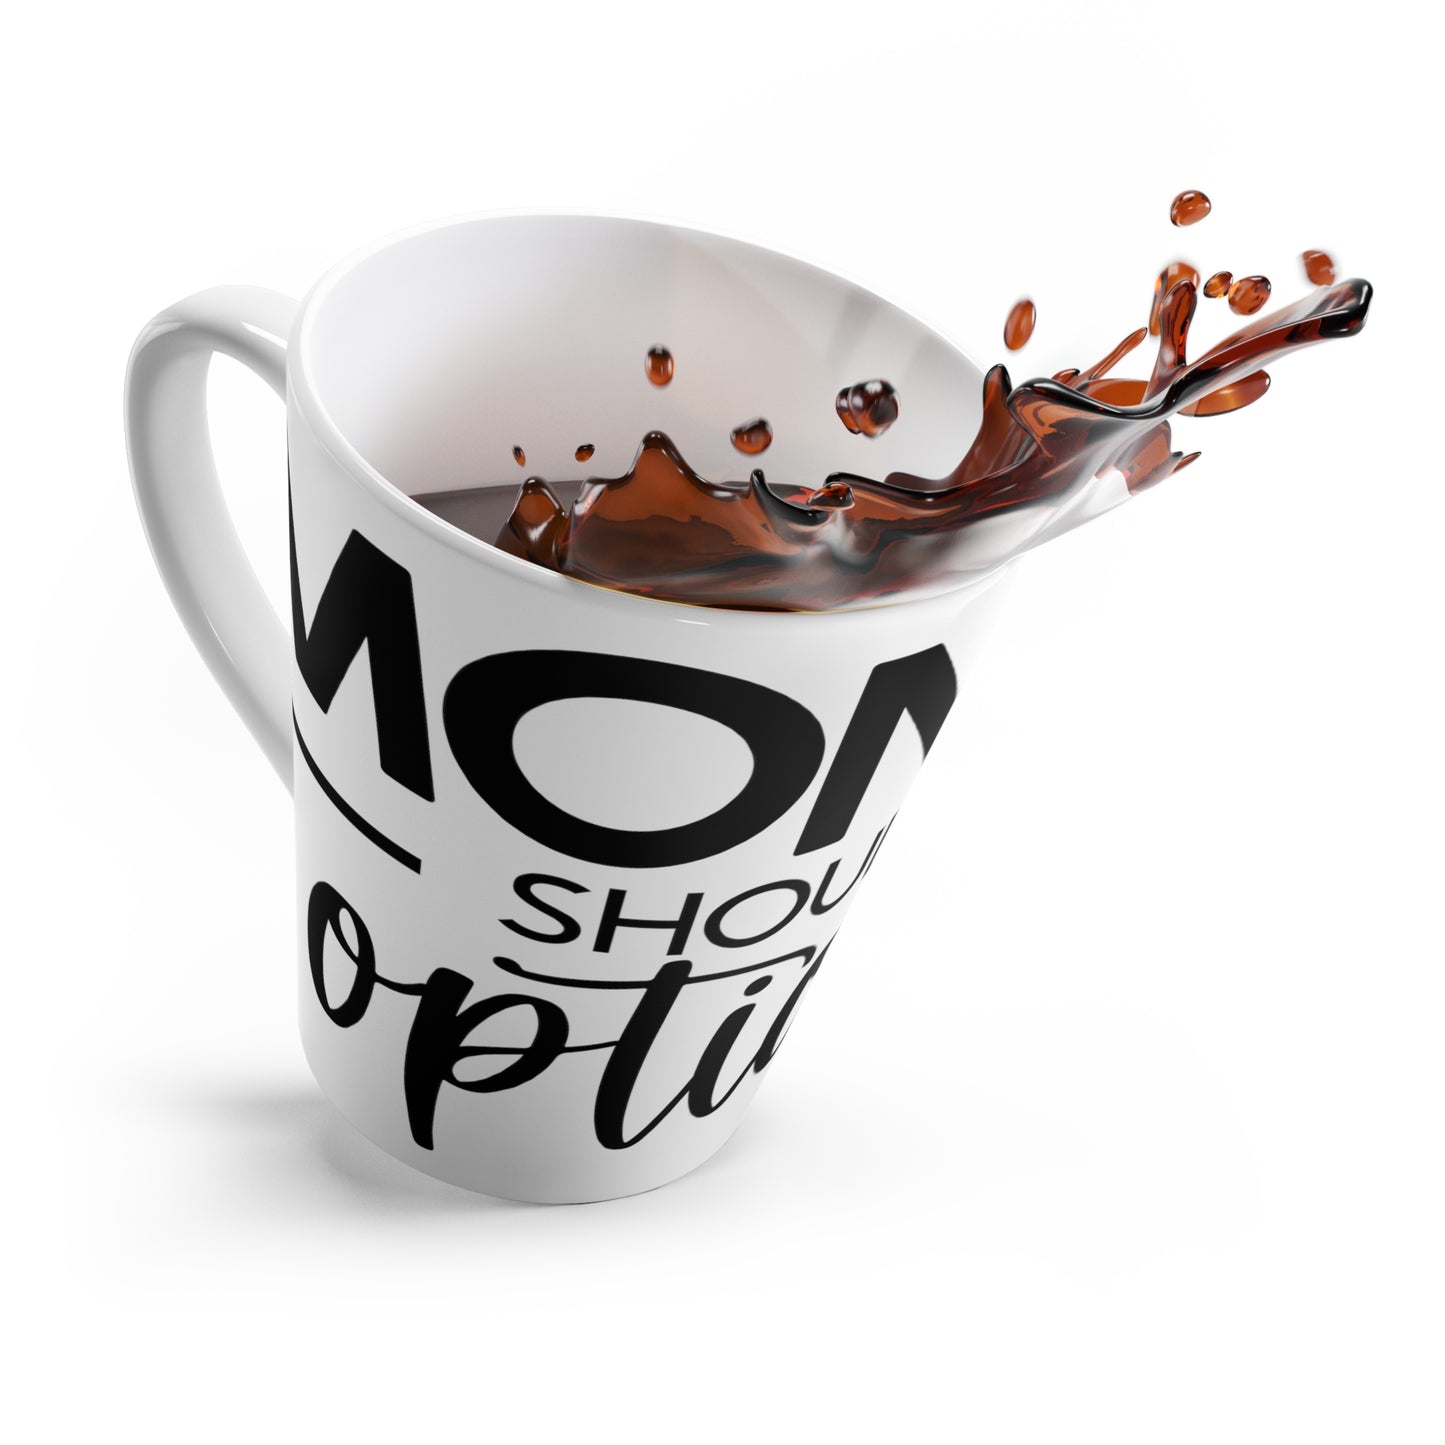 Latte Mug "Monday Should Be Optional"